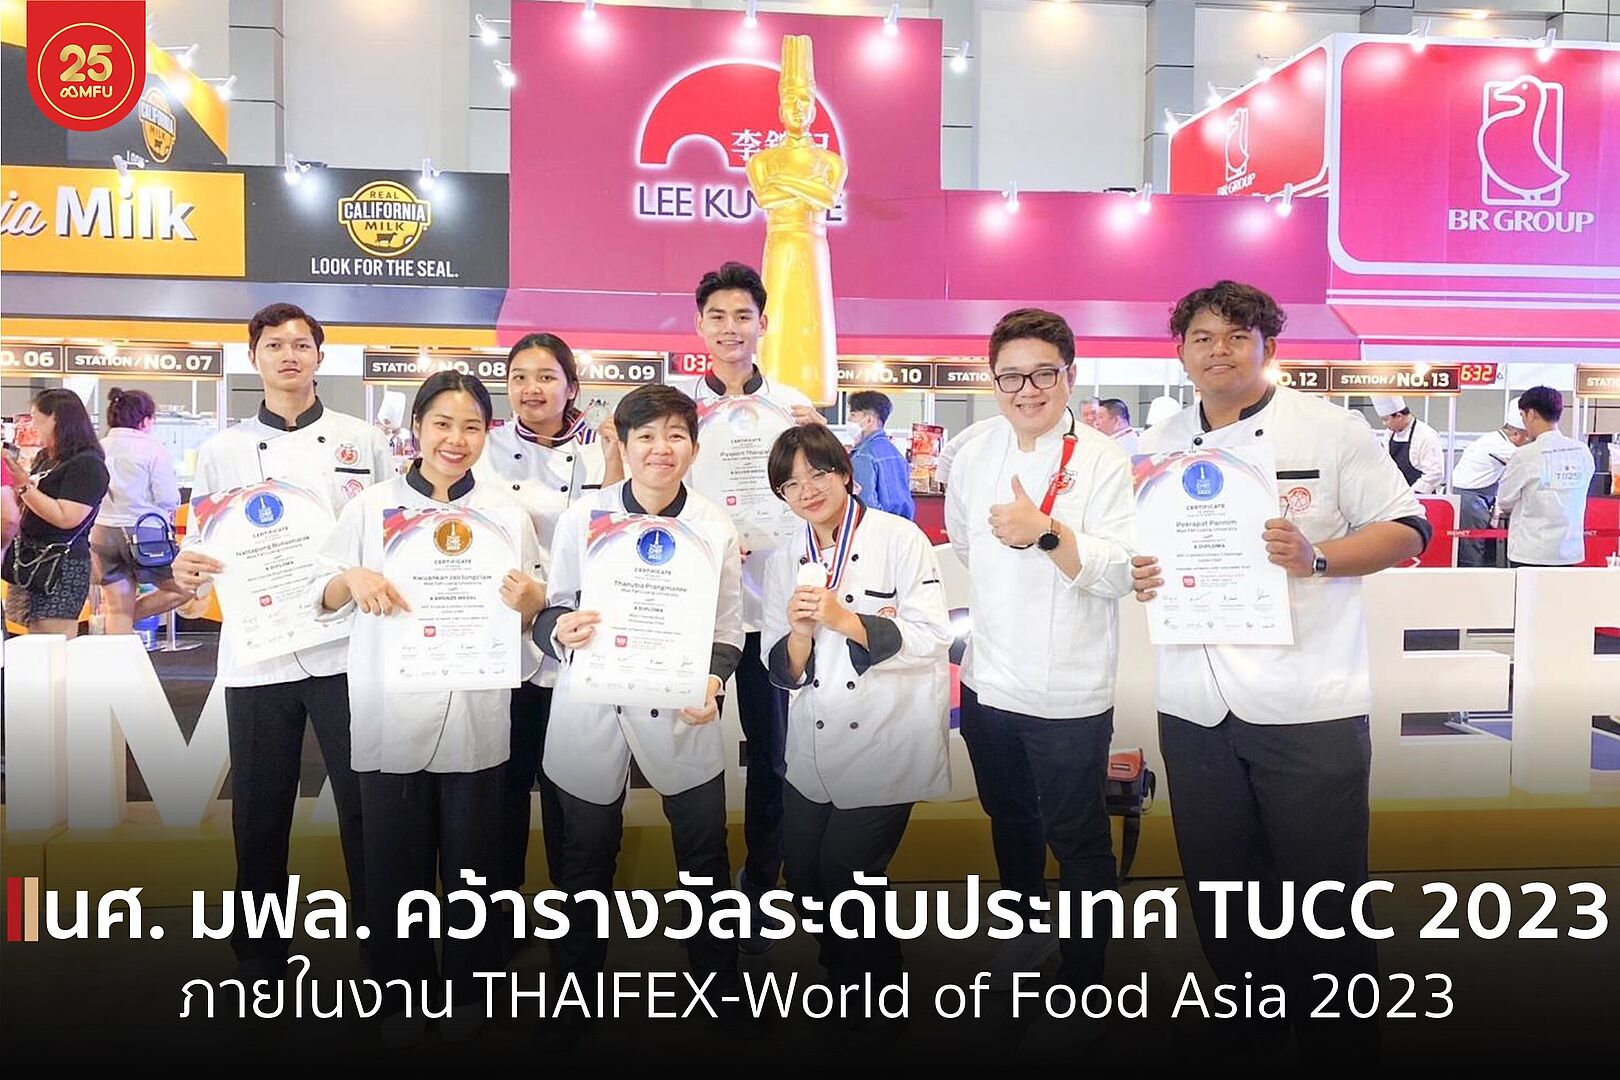 นักศึกษา HBM เจ๋งคว้ารางวัลการแข่งขันทำอาหารระดับโลก TUCC 2023